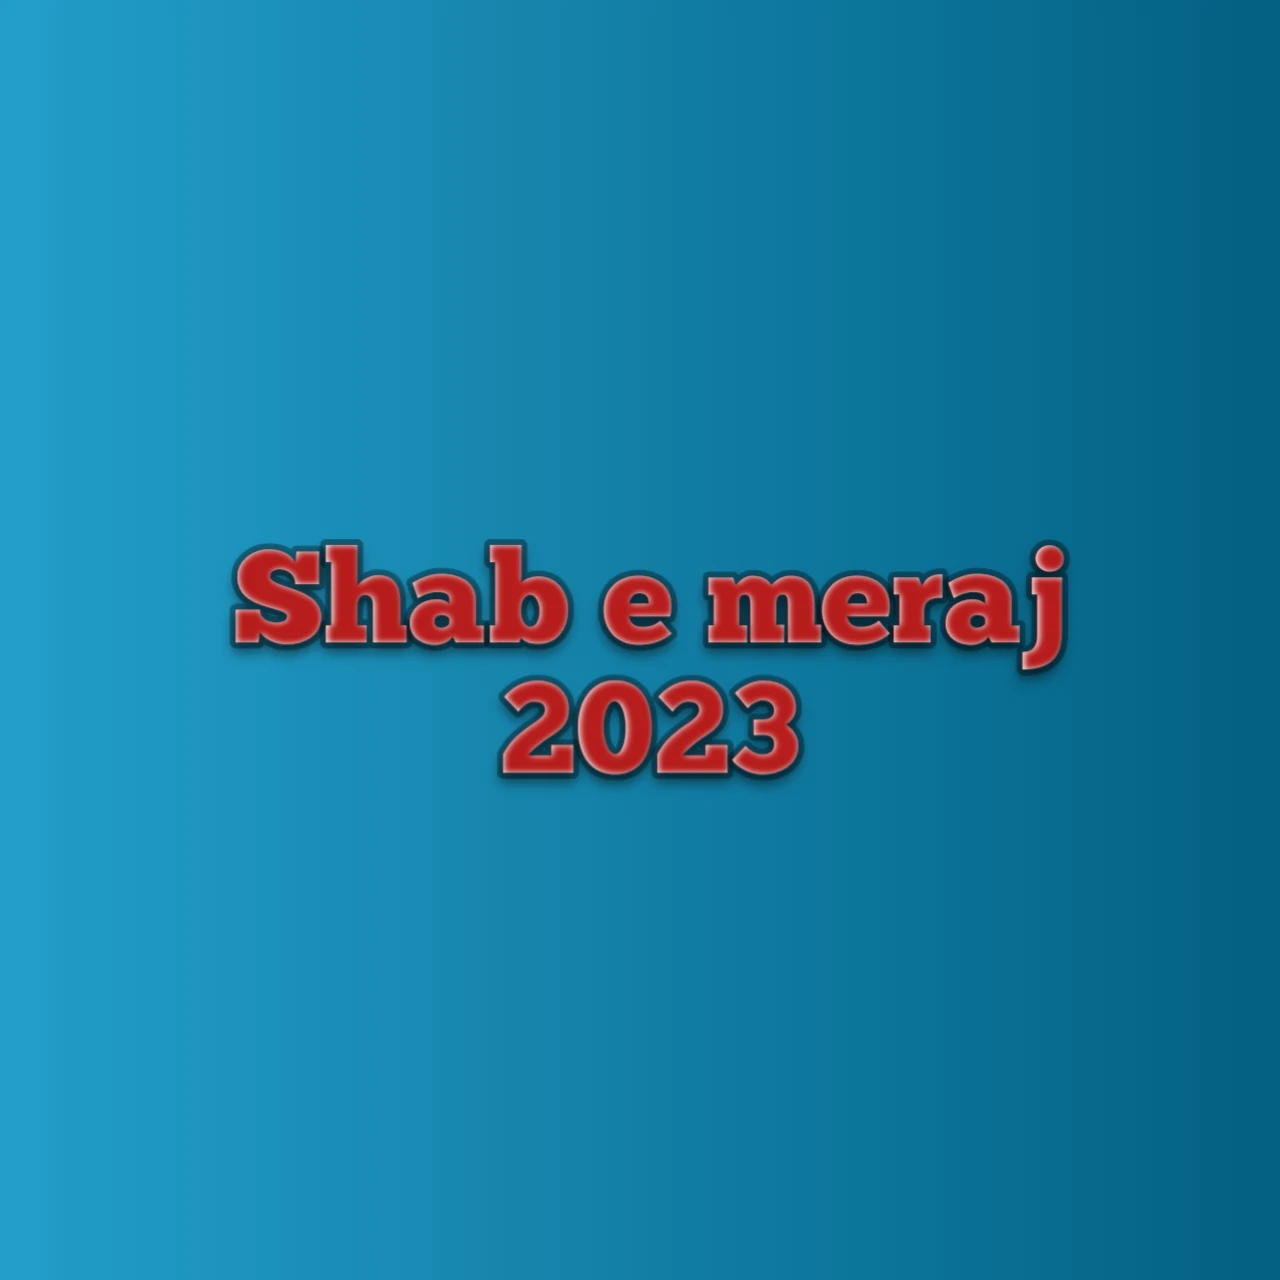 shab e meraj 2023, shab e meraj 2023 date, shab e meraj 2023 date in bangladesh, shab e meraj 2023 in bangladesh